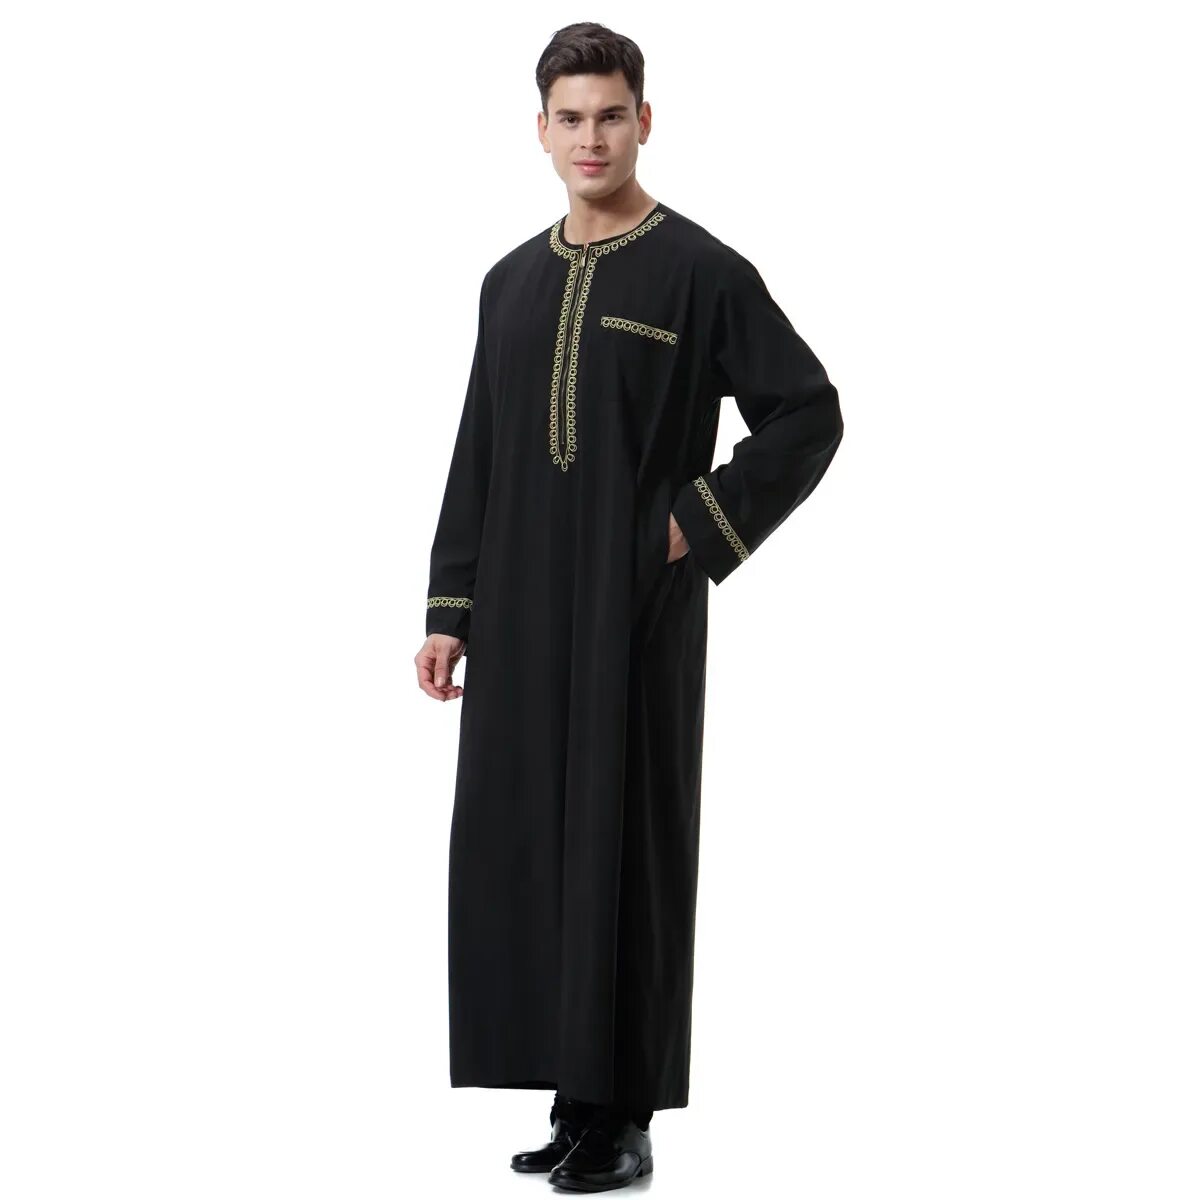 Мусульманская абайя мужская. Мусульманская мужская одежда абайя. Платье мужское мусульманское. Арабское мужское платье.